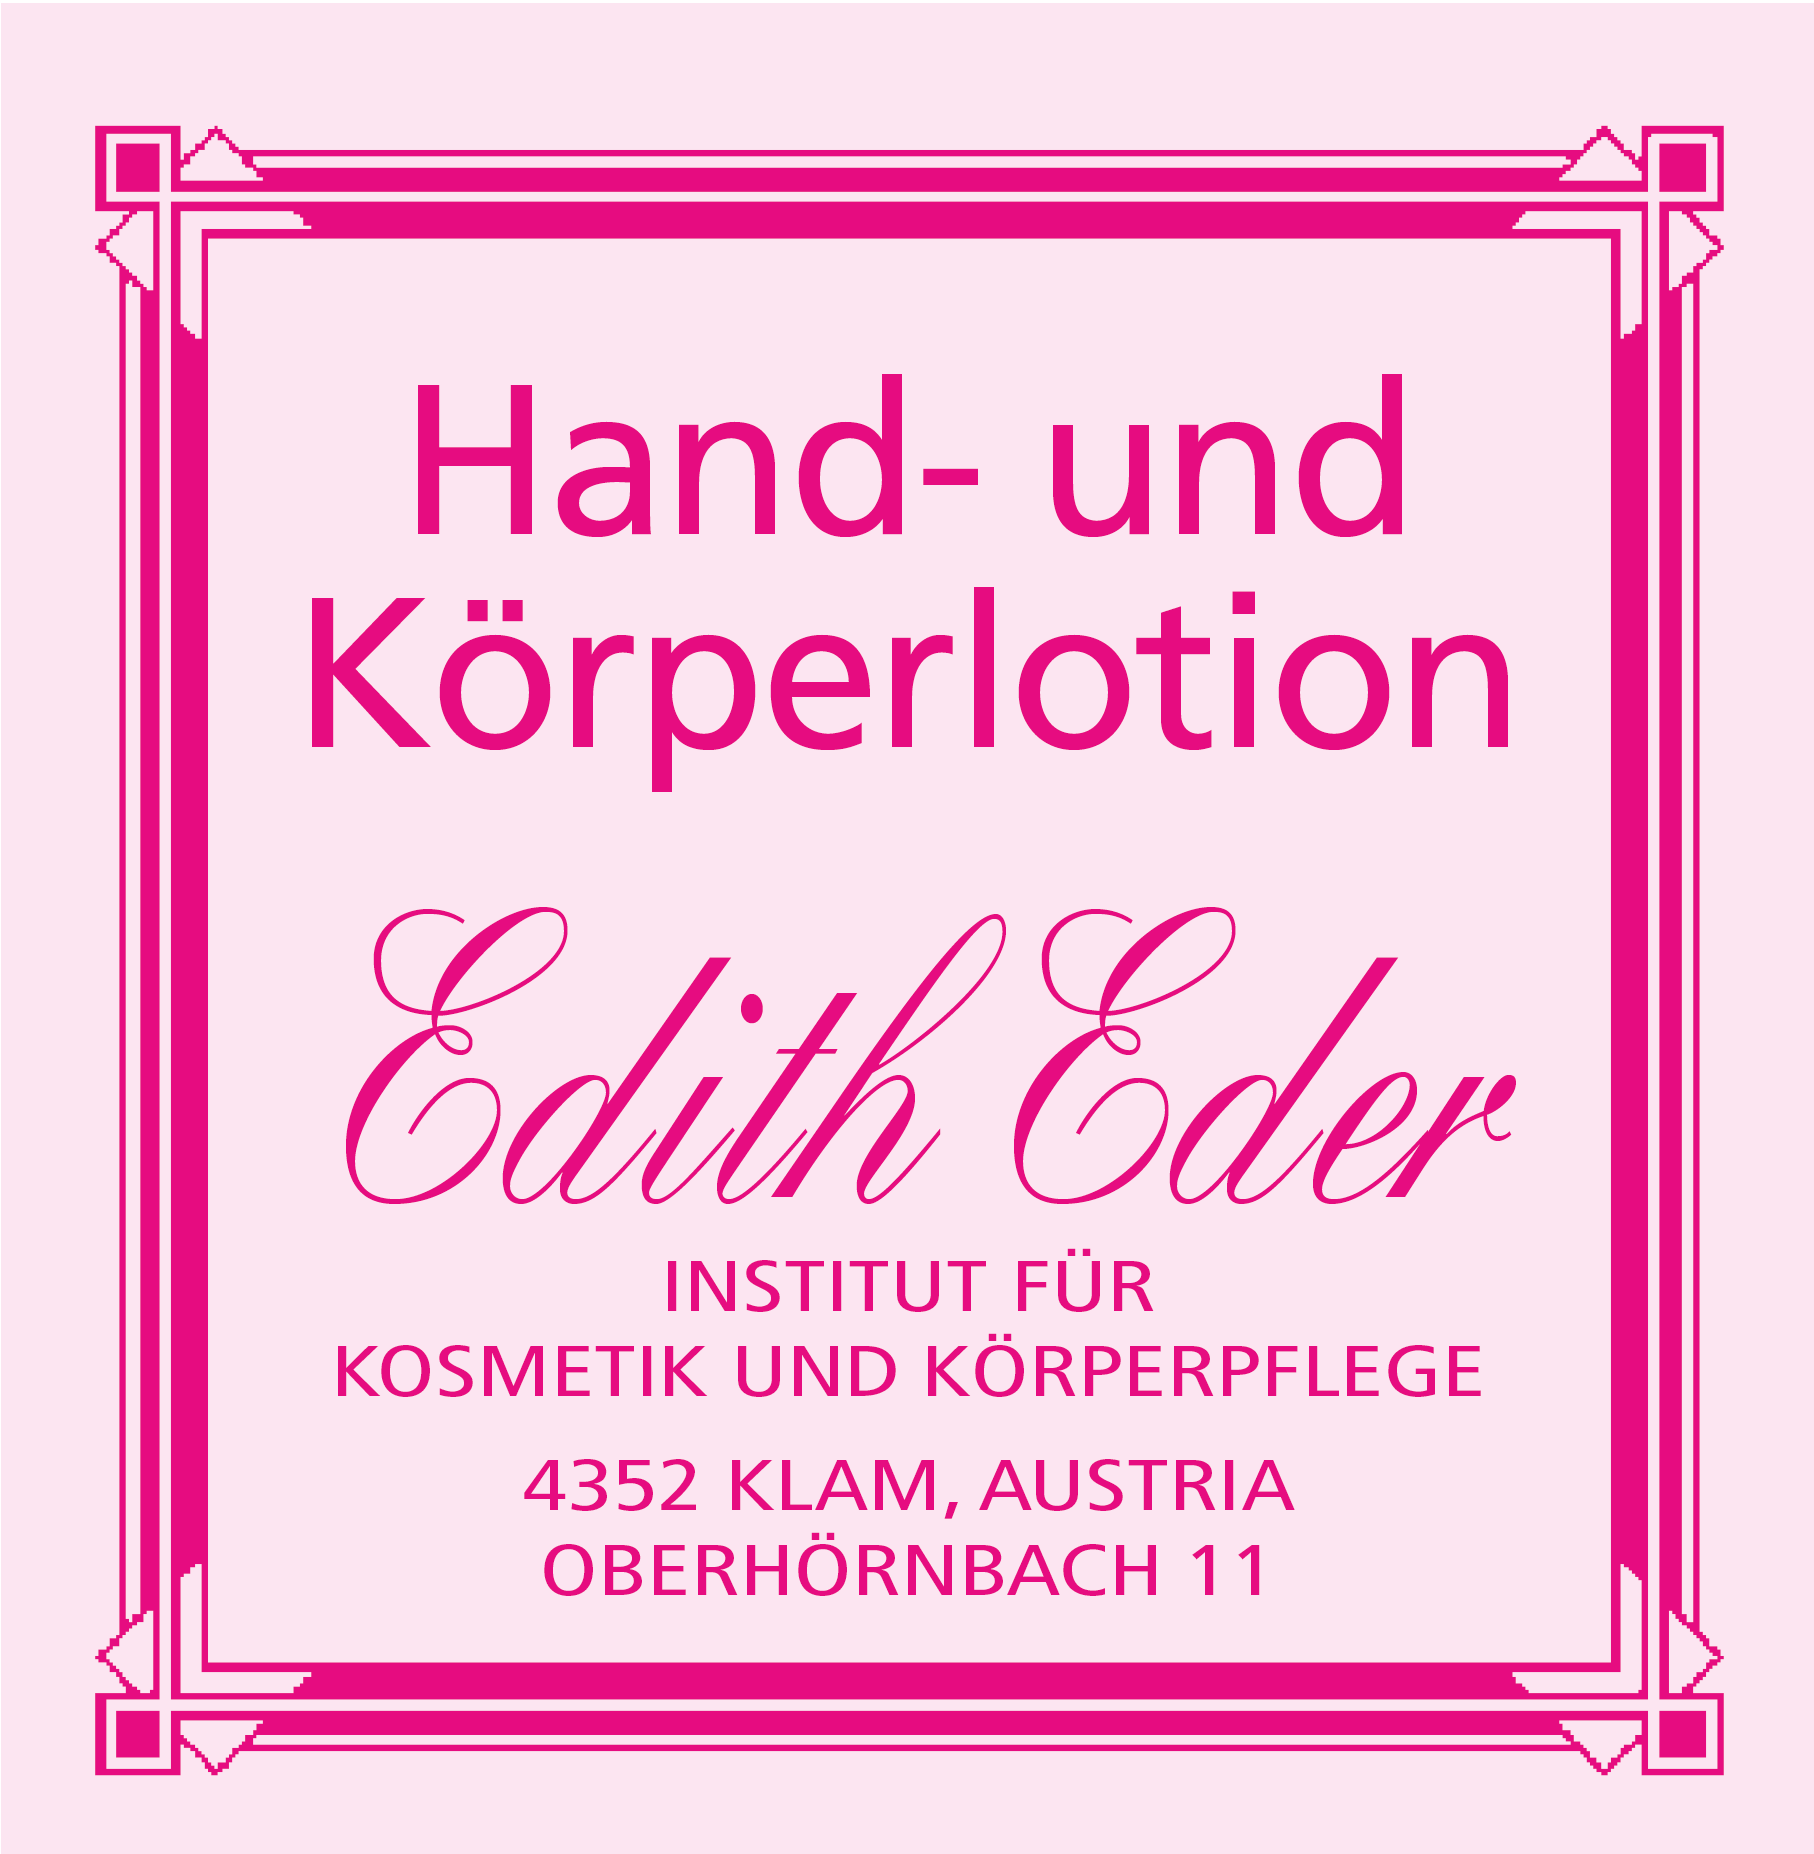 Hand- und Körperlotion Edith Eder